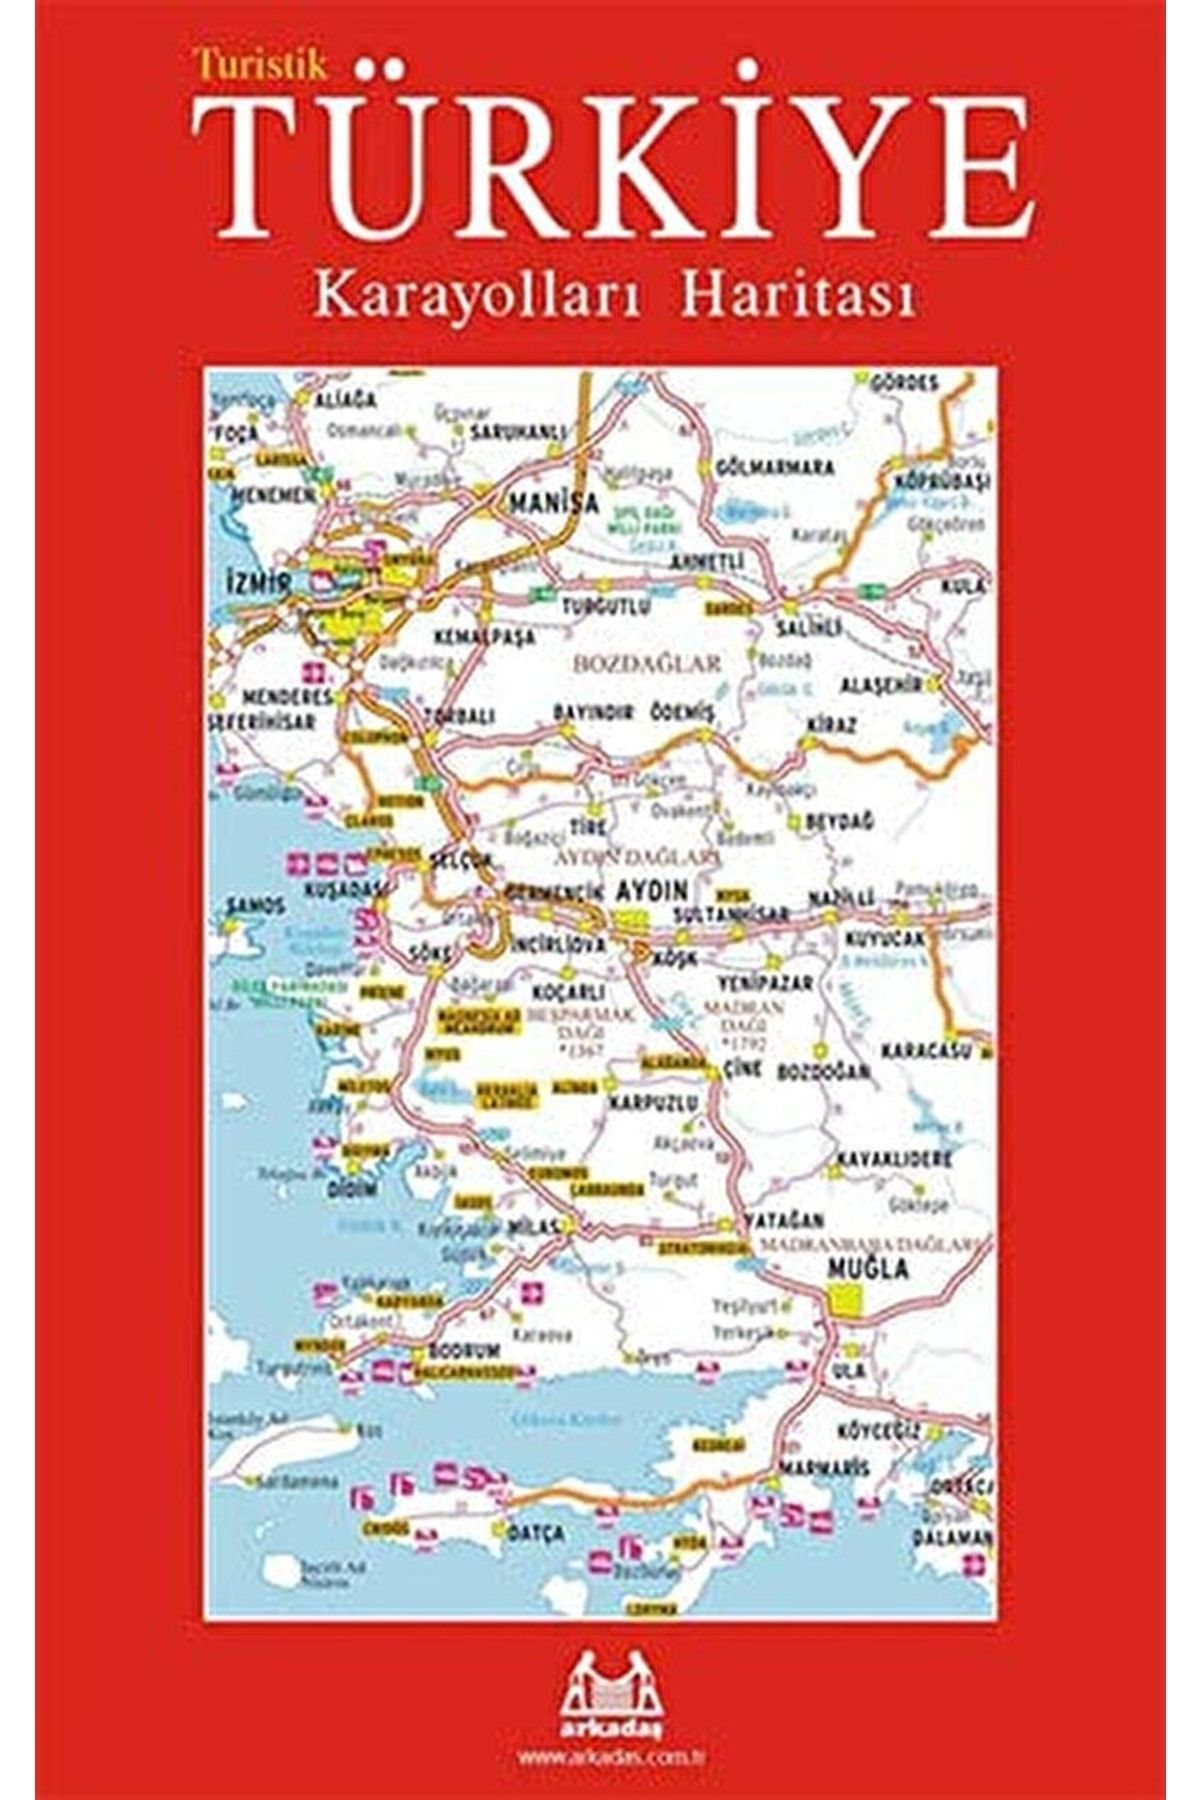 Arkadaş Yayıncılık Turistik Türkiye Karayolları Haritası / Derleme / / 9789755094526